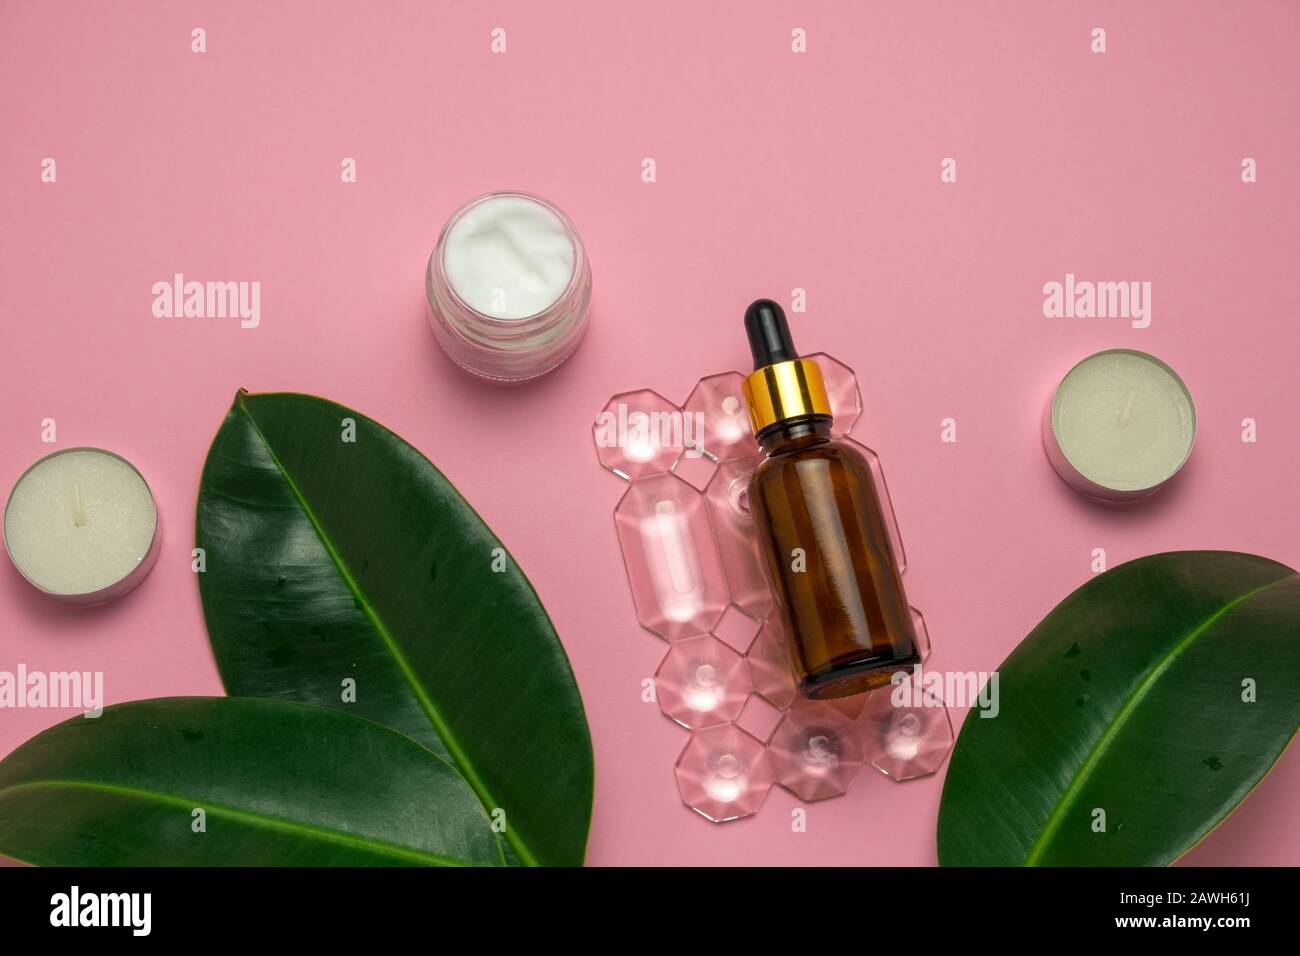 vista superior jarra crema, velas y botella de aceite de aroma en un fondo rosa piel y el concepto de cuidado corporal Foto de stock